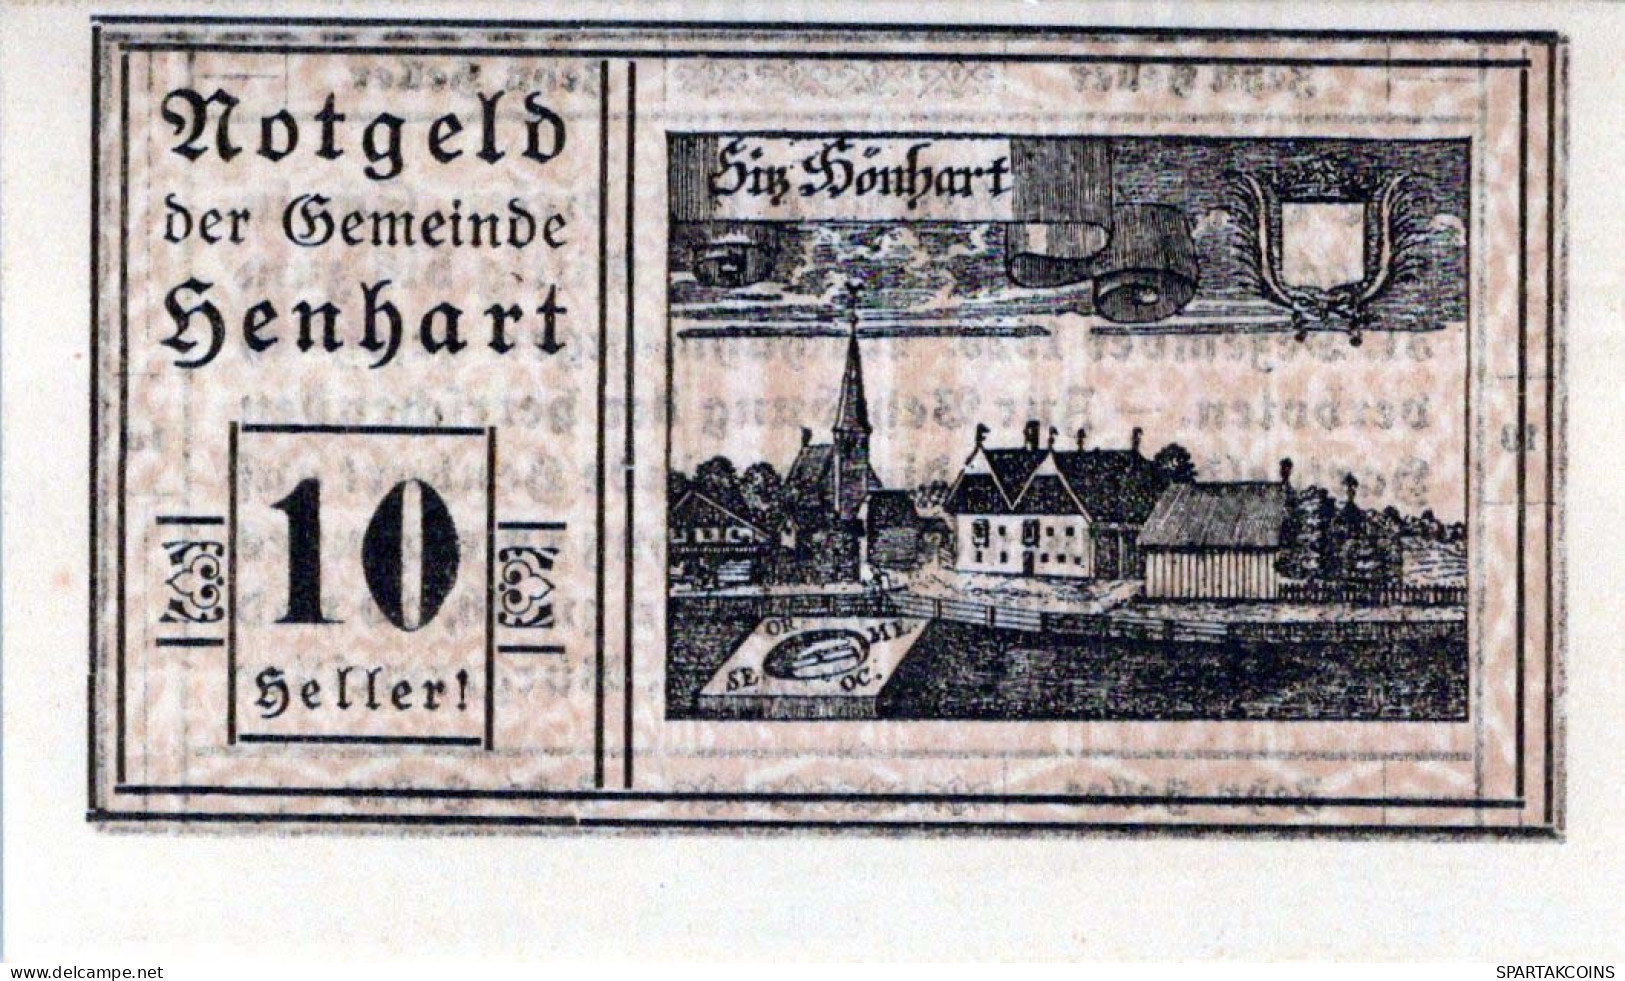 10 HELLER 1920 Stadt HENHART Oberösterreich Österreich Notgeld Papiergeld Banknote #PG584 - [11] Lokale Uitgaven